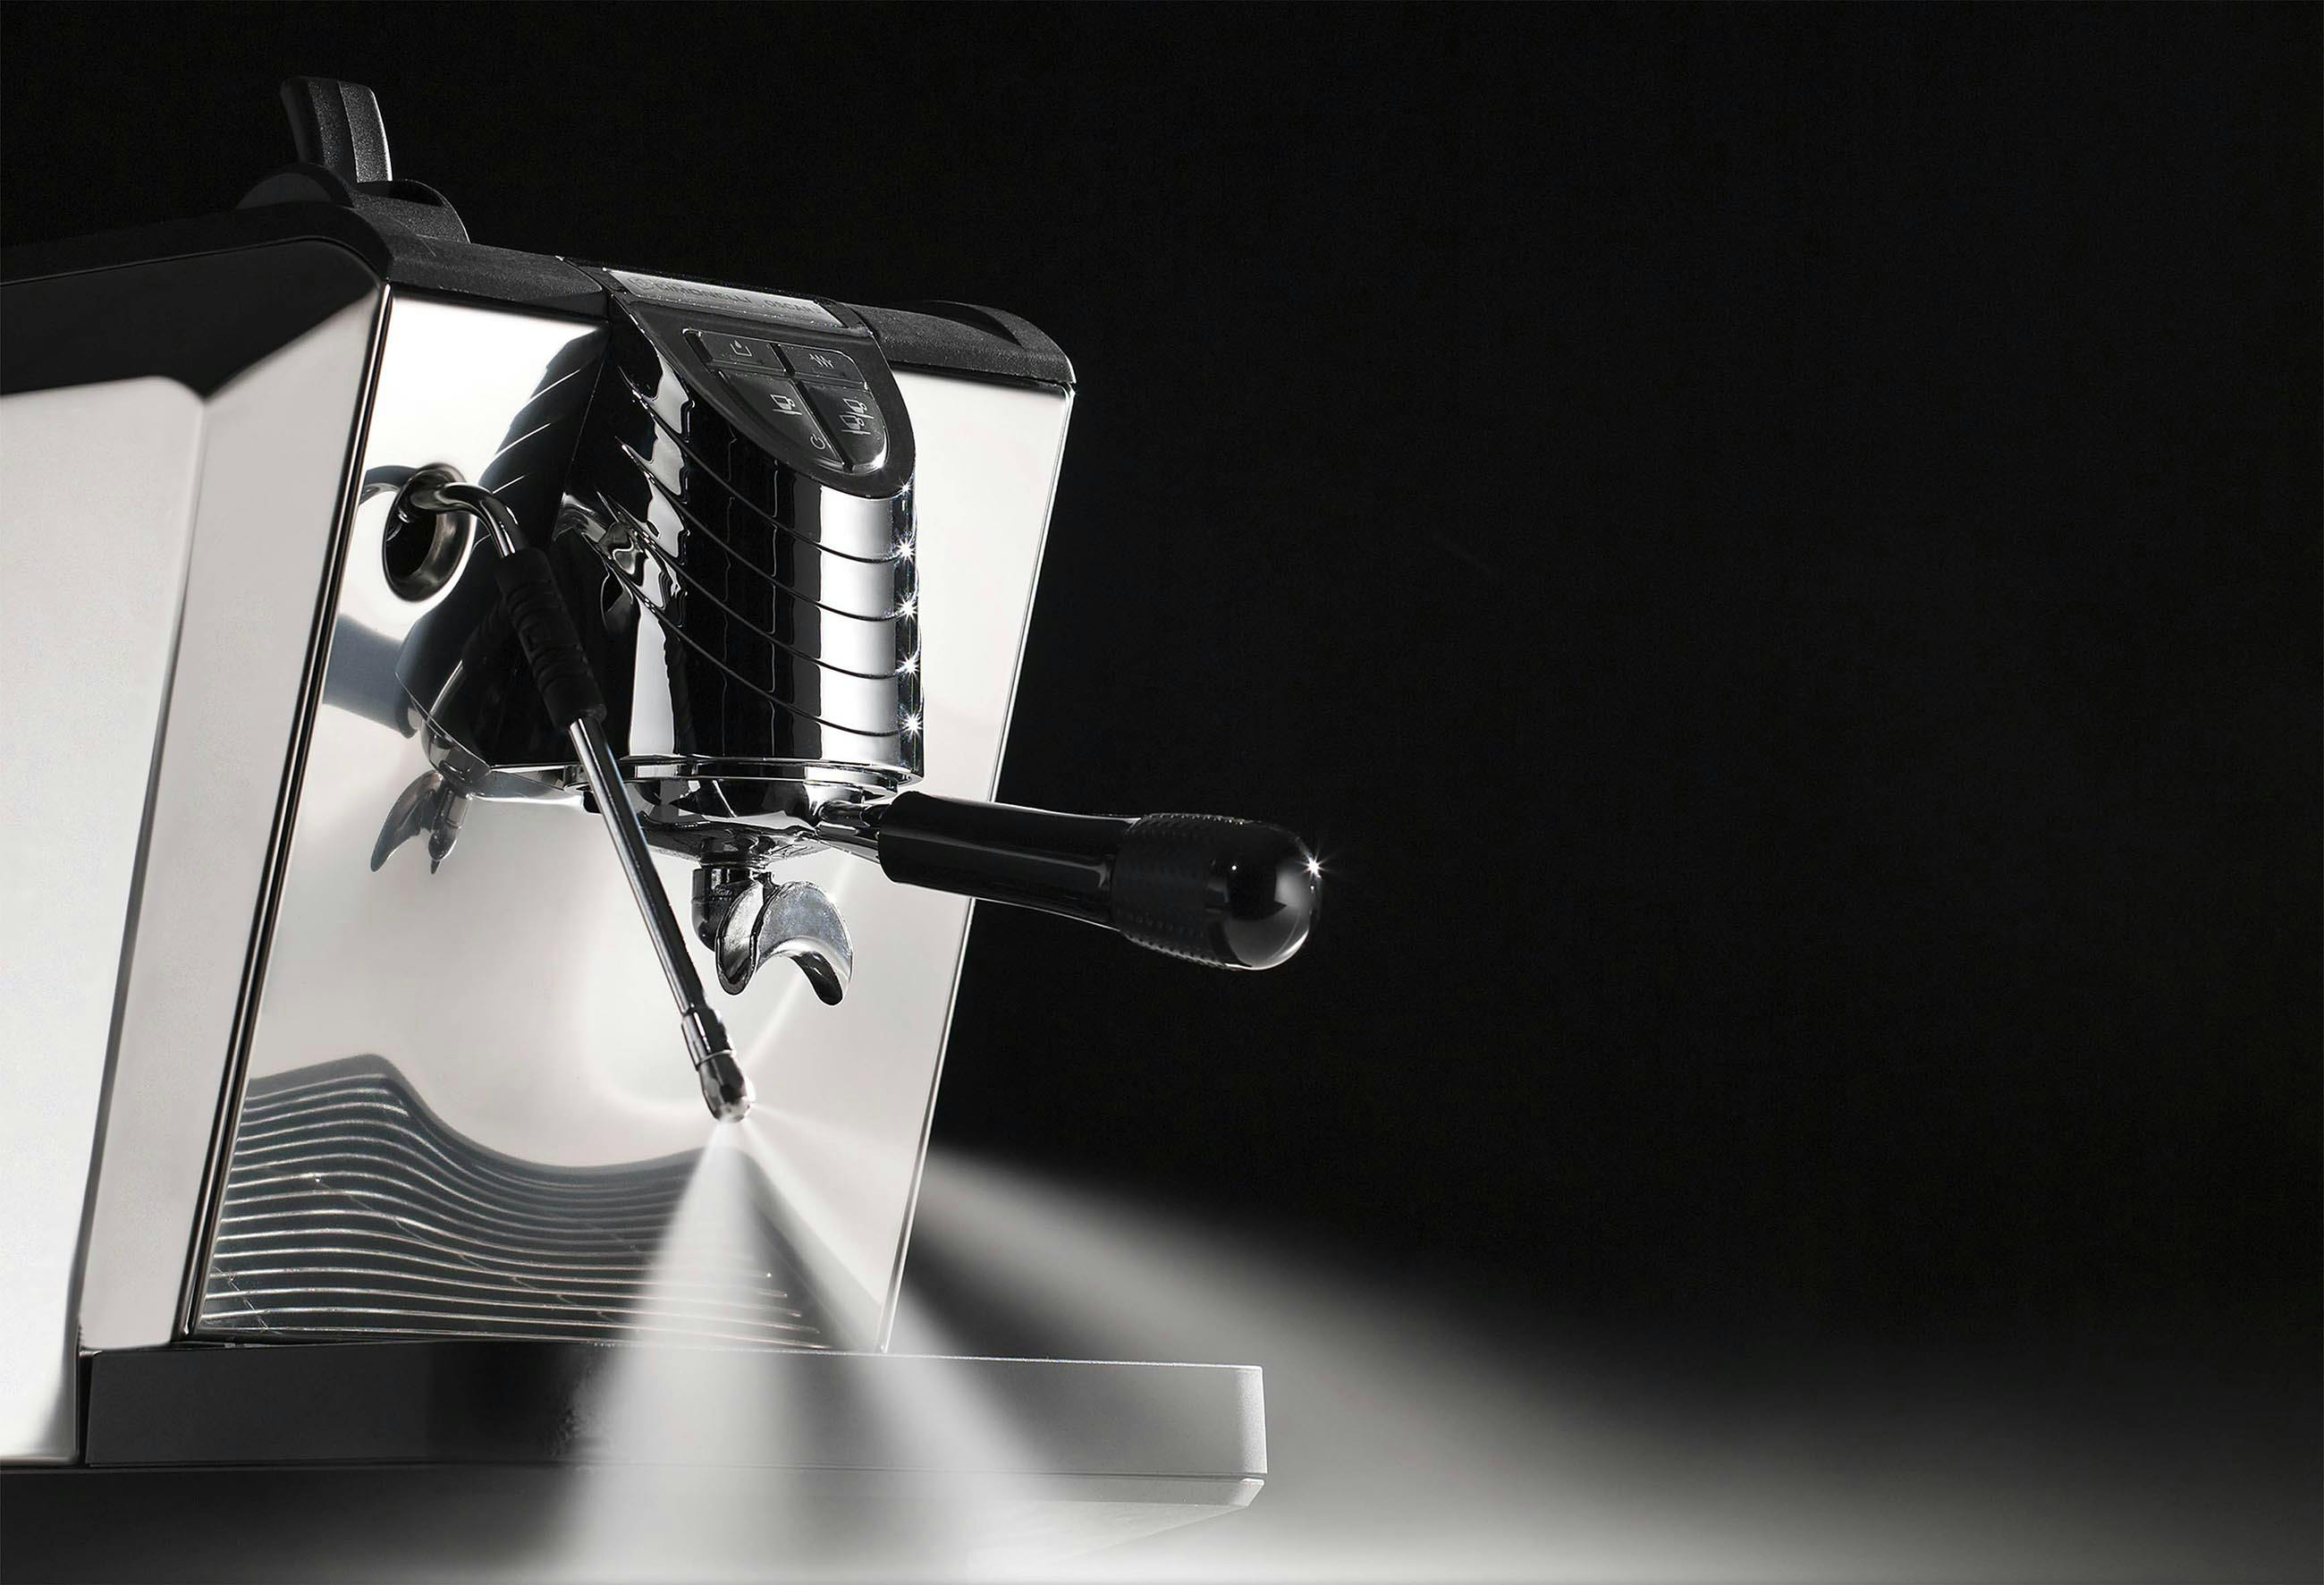 Nuova Simonelli Oscar II Espresso Machine